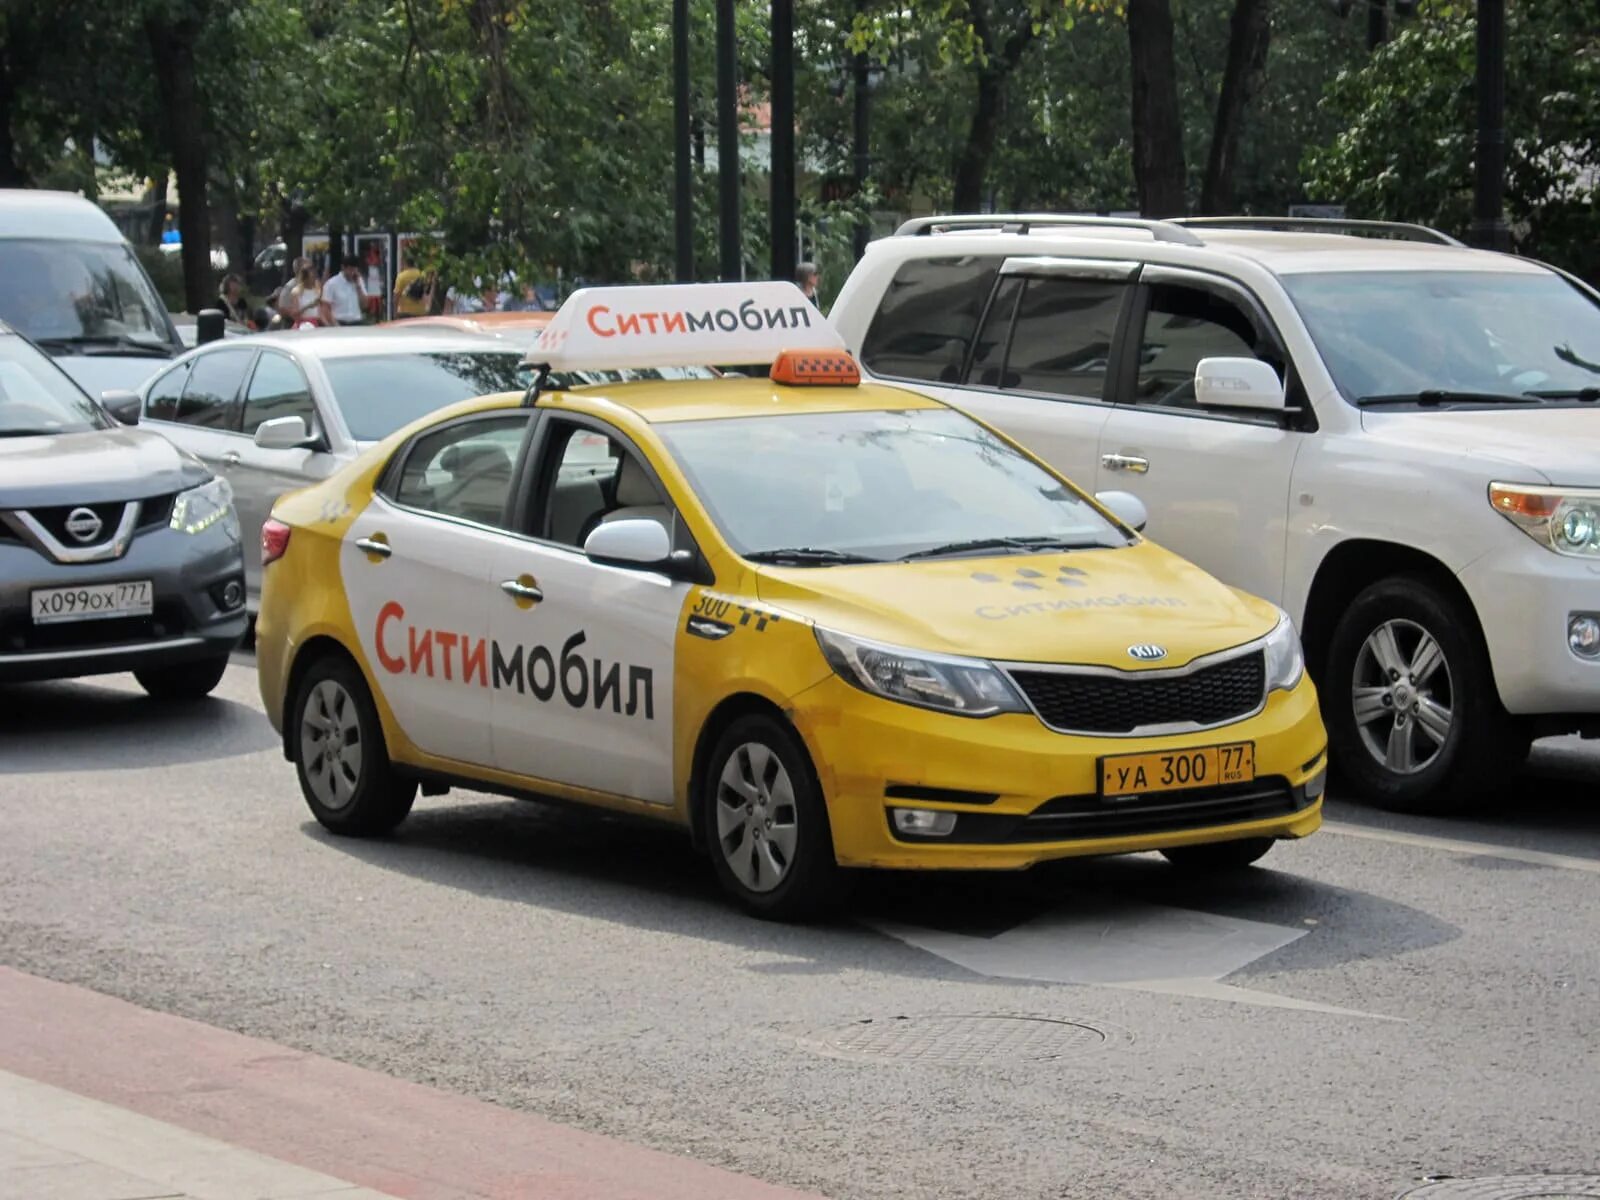 Сити мобил. Сити мобил машины. Машина такси Сити мобил. Такси Ситимобил в Москве.